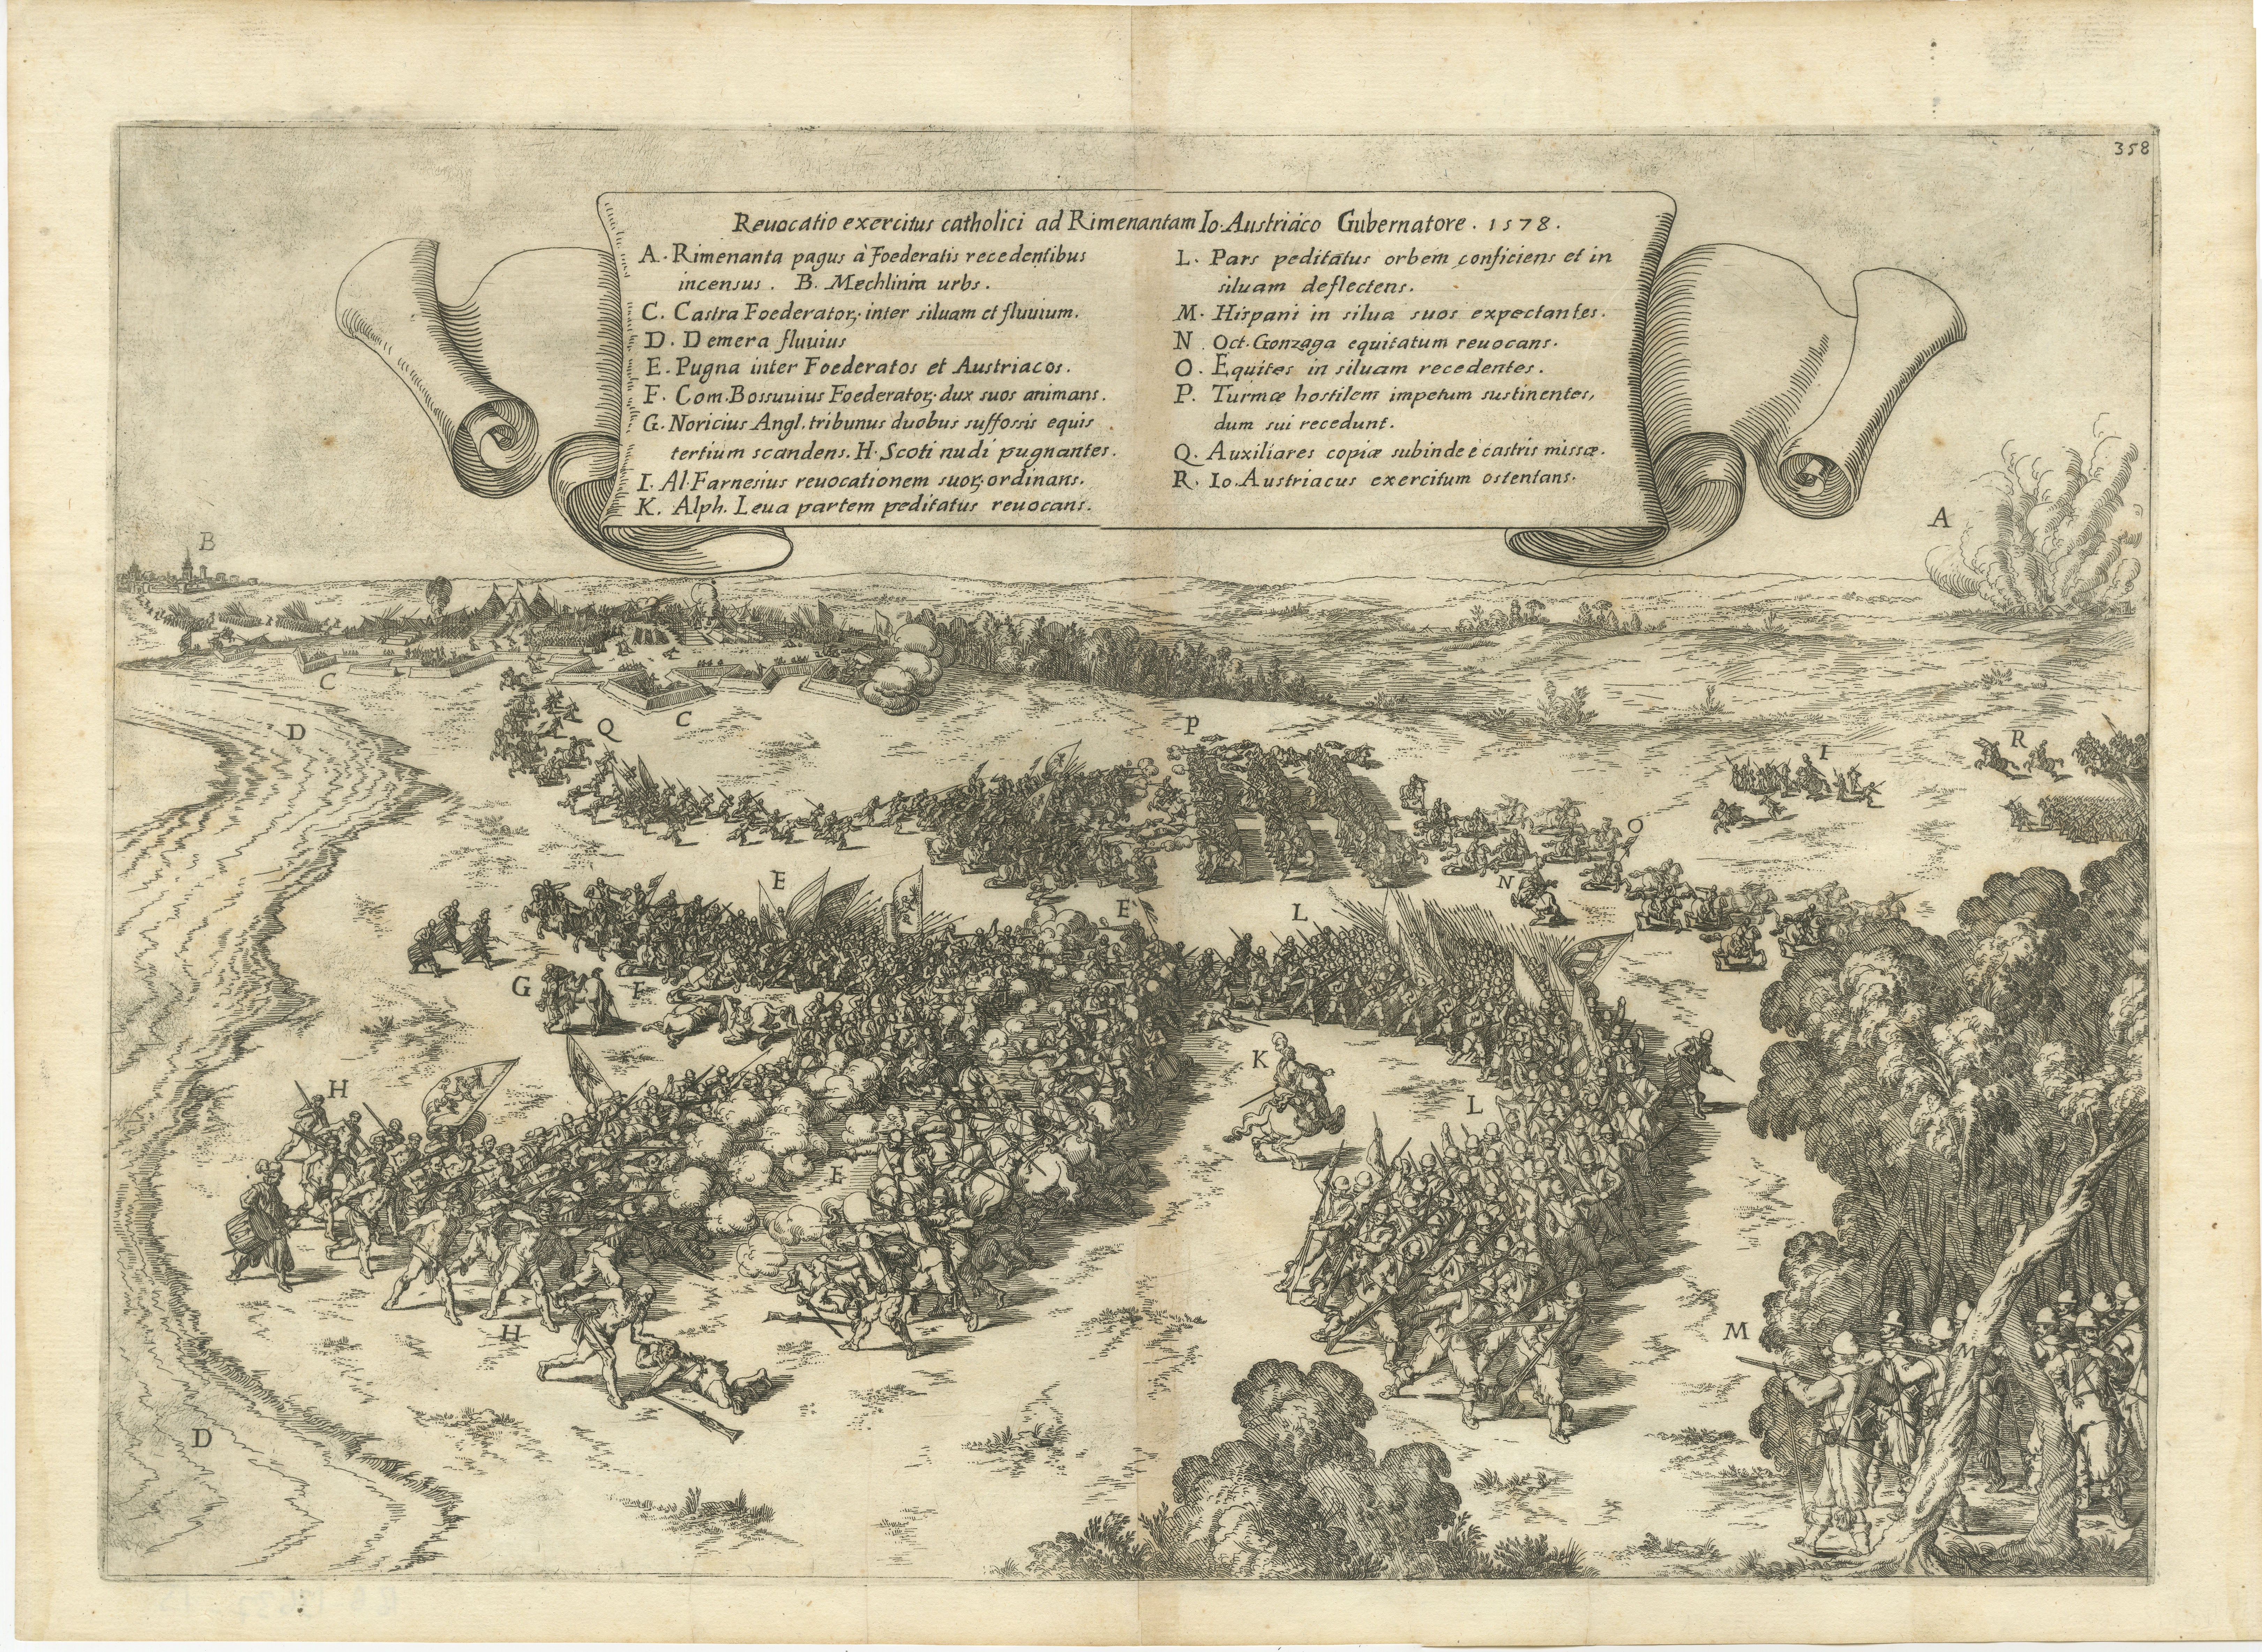 Rare gravure représentant une bataille de la guerre de quatre-vingts ans. 

La bataille de Rijmenam a eu lieu le 31 juillet 1578, au début de la guerre de Quatre-Vingts Ans. Il s'agissait d'un conflit entre les États généraux des Pays-Bas et le